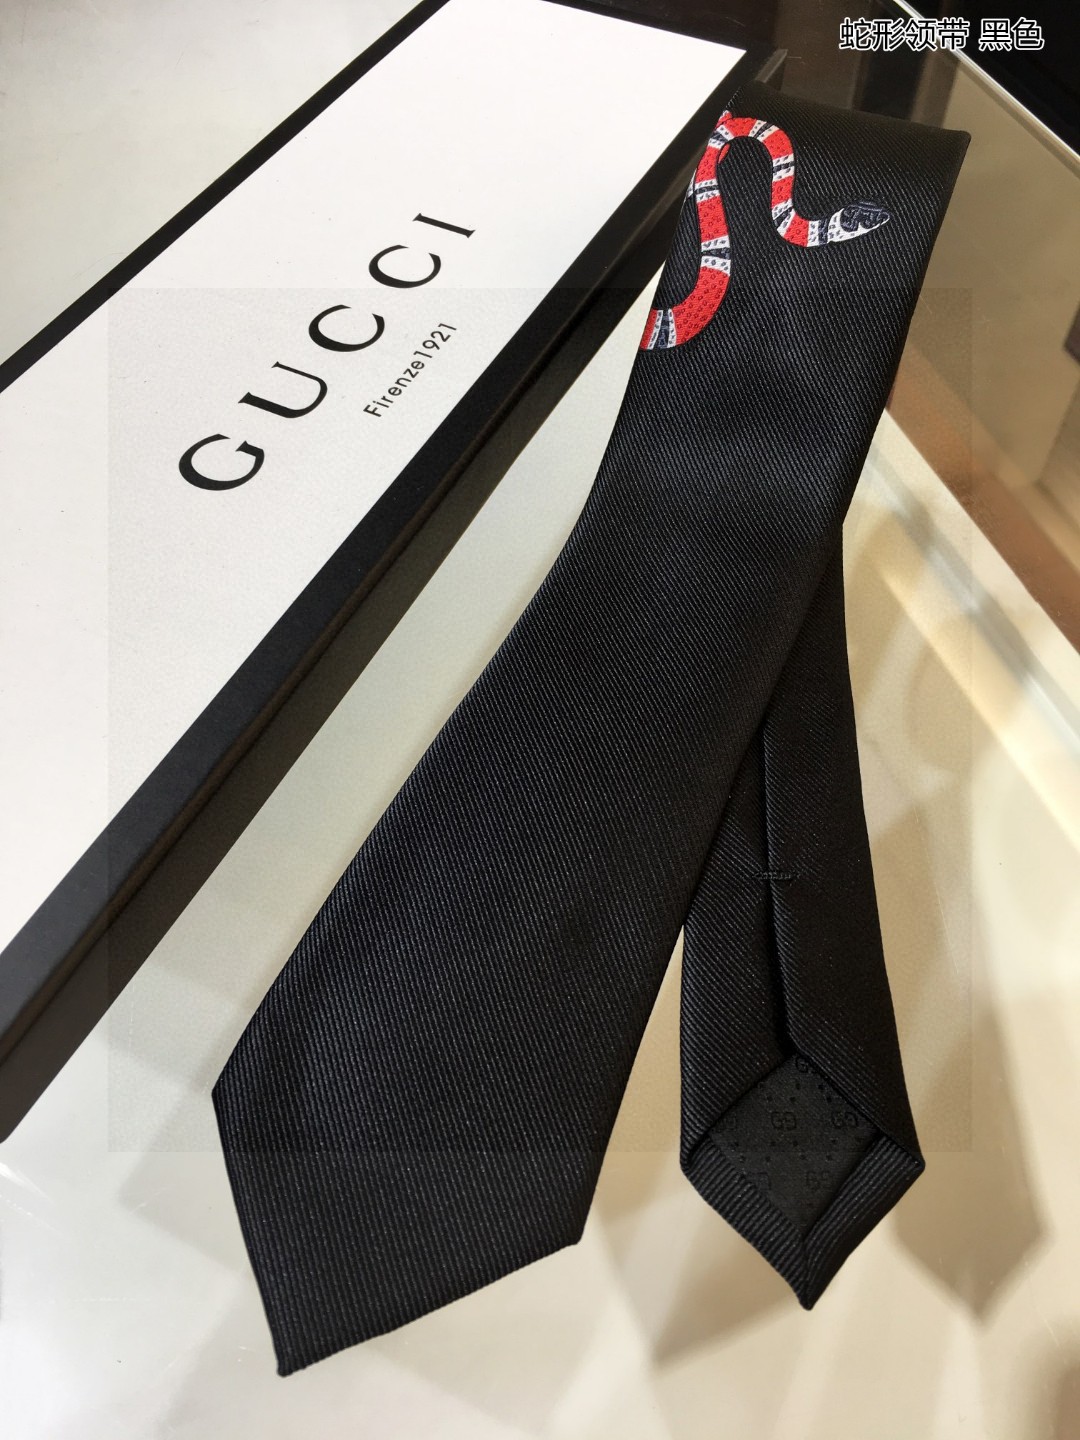 G家男士领带系列蛇形领带稀有采用经典主题动物绣花展现精湛手工与时尚优雅的理想选择这款领带将标志性完美的结